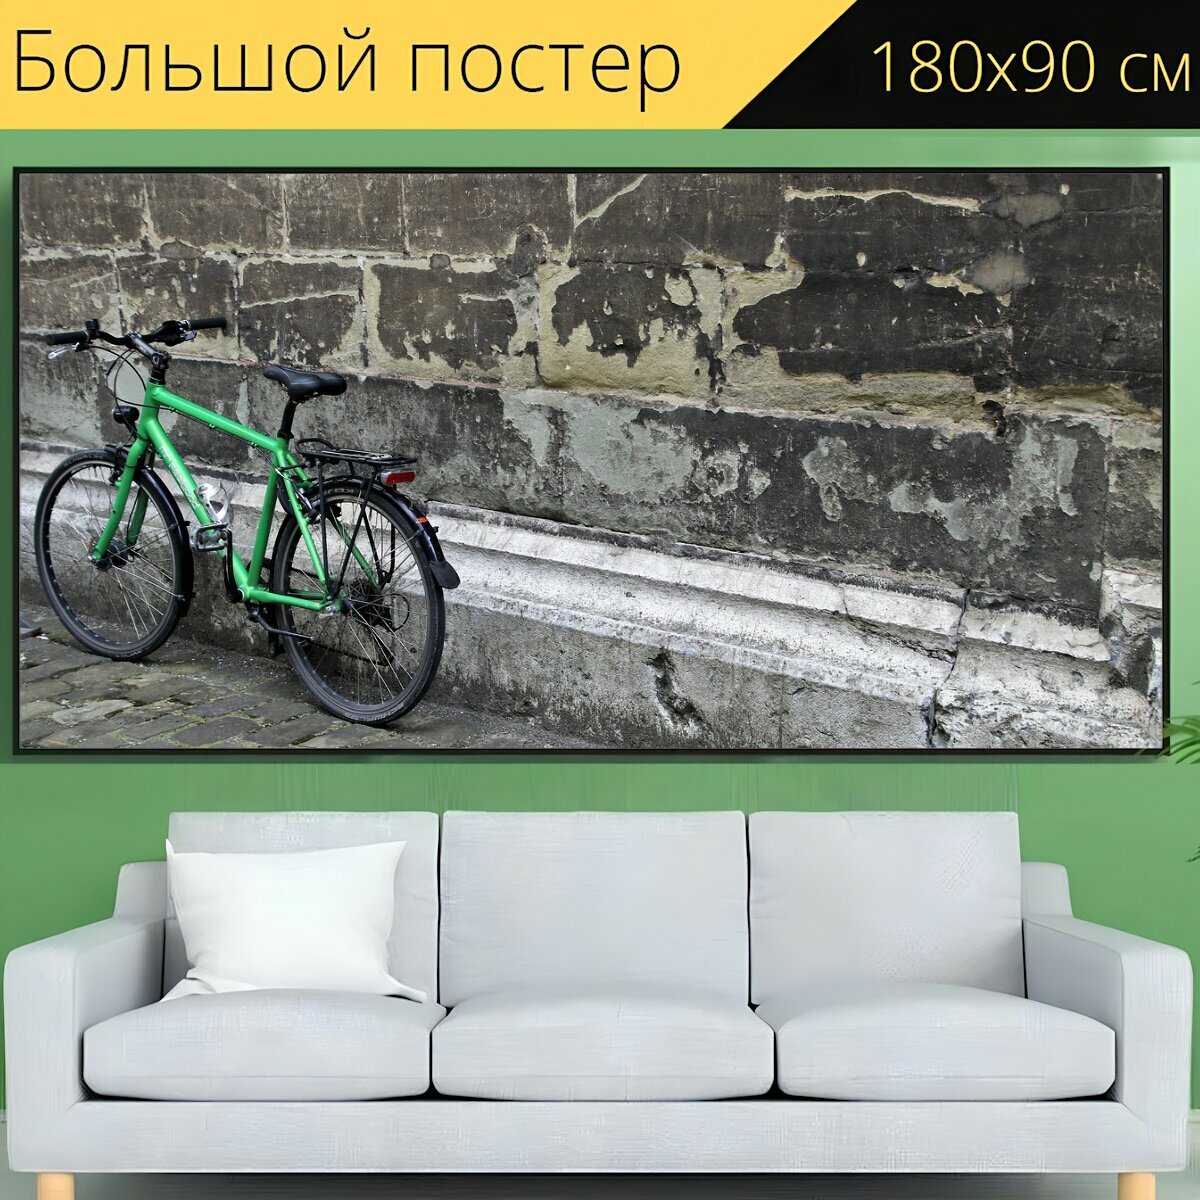 Большой постер "Велосипед, стена, стены" 180 x 90 см. для интерьера